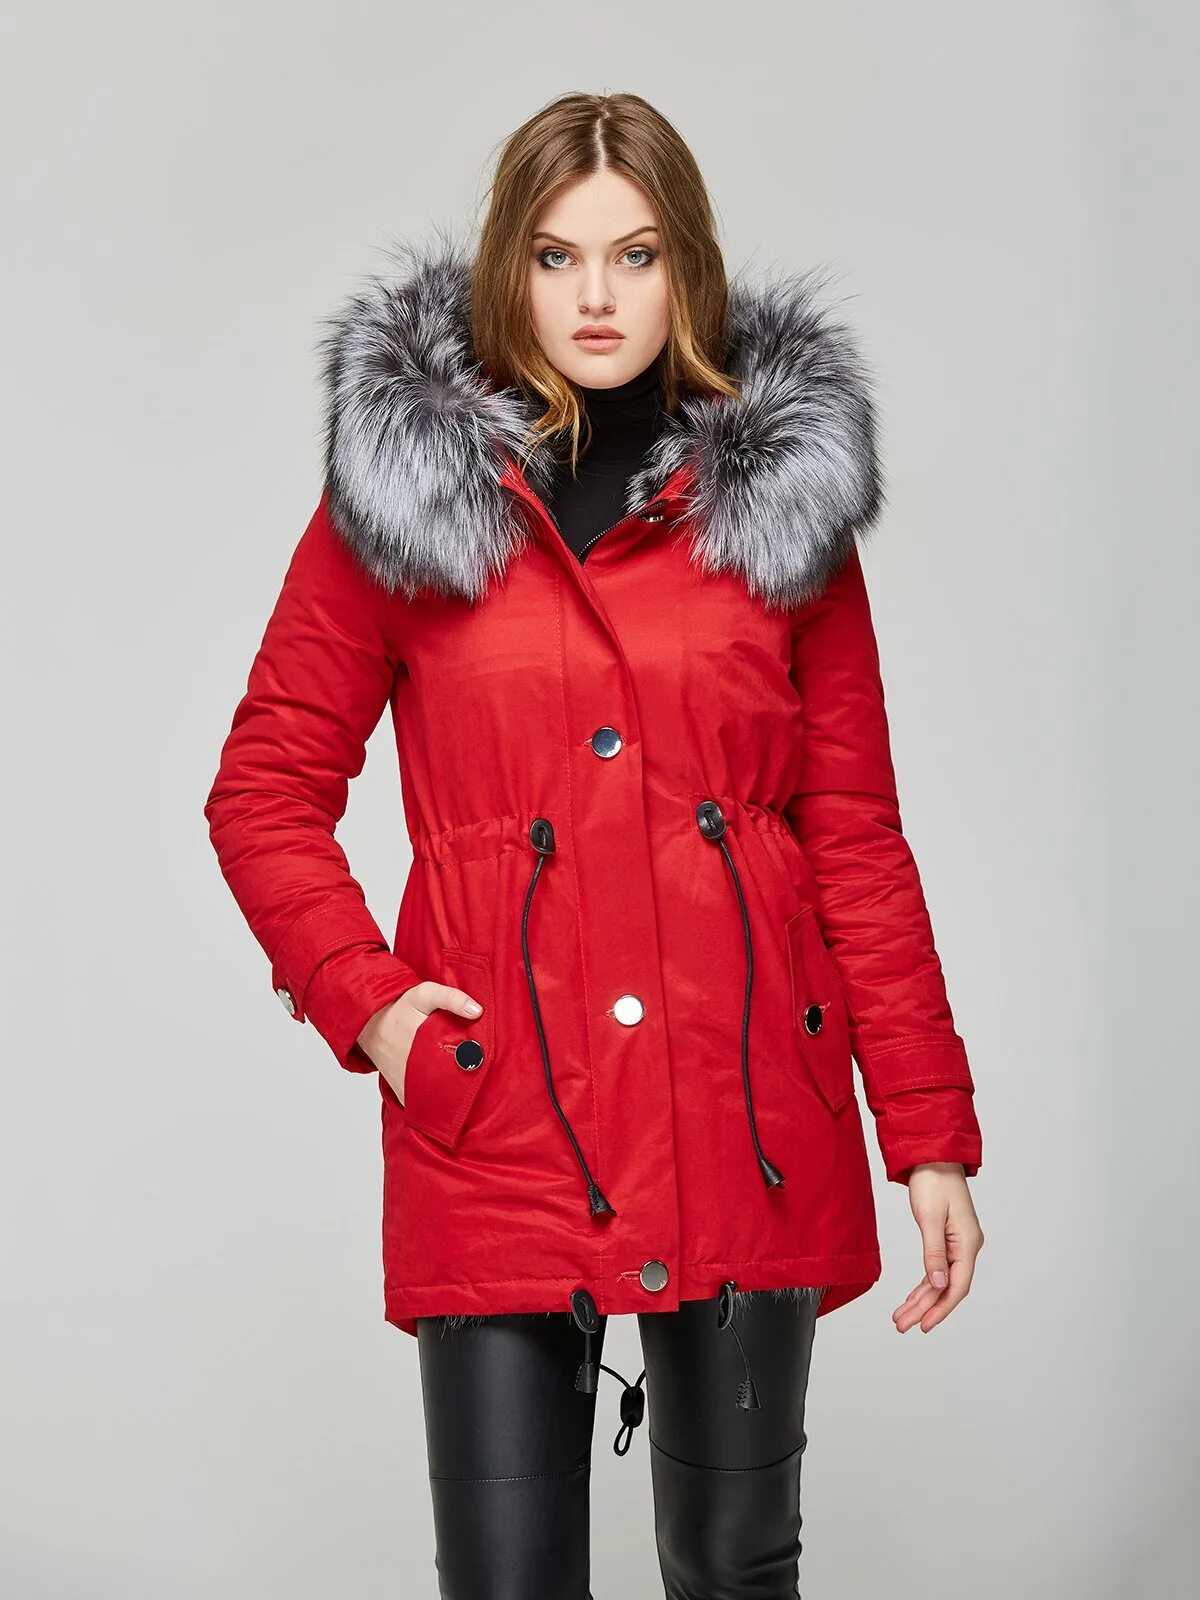 Красный пуховик женский. Красная зимняя куртка женская. Красная парка женская. Куртка парка красная. Недорогие качественные куртки